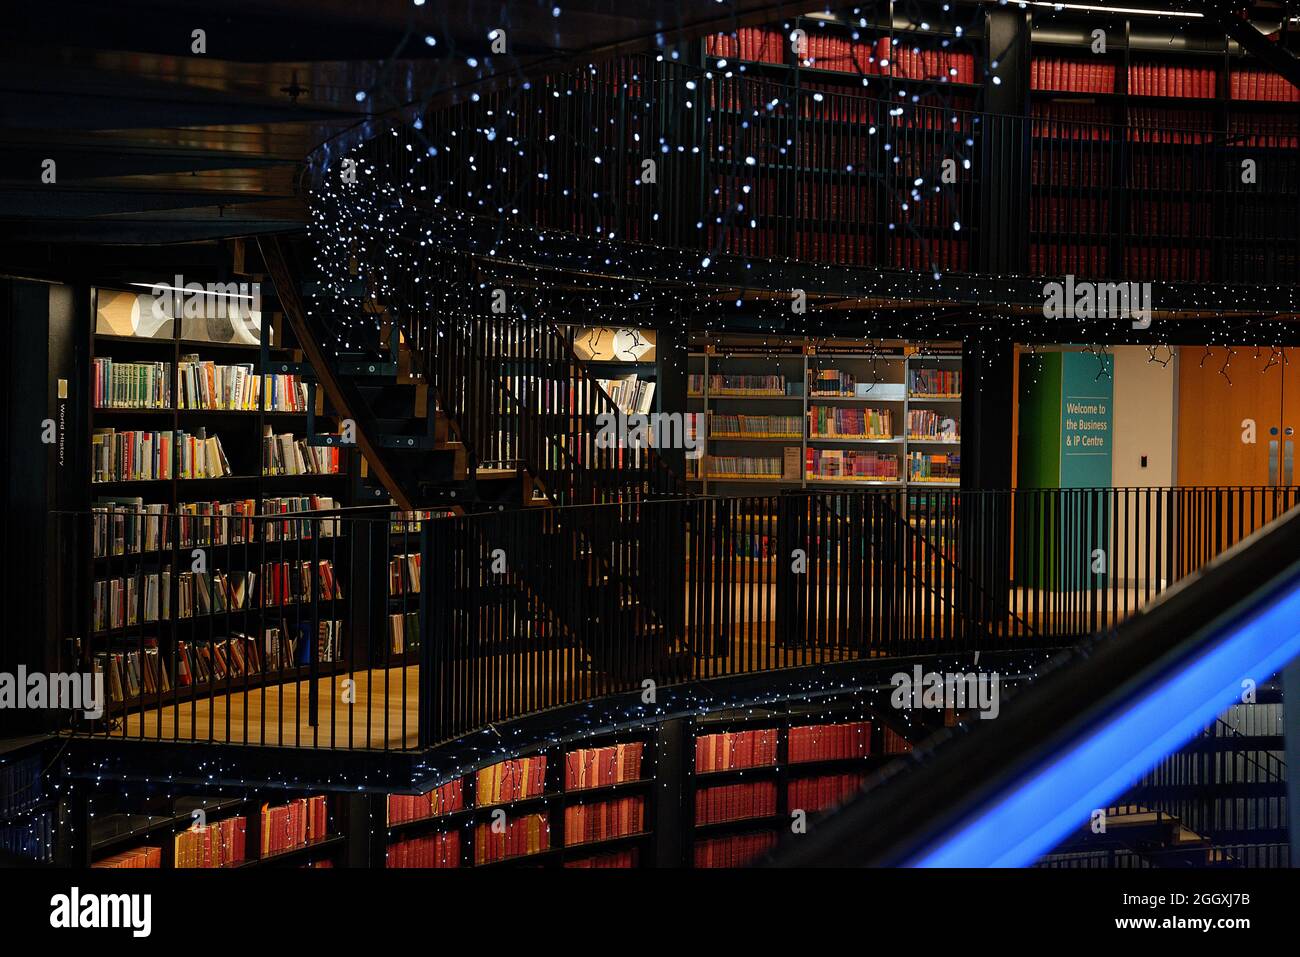 Bibliothek von Birmingham, im Zentrum der Stadt West Midlands. Gebogenes Atrium und blau beleuchtete Rolltreppen und funkelndes Licht. Stockfoto